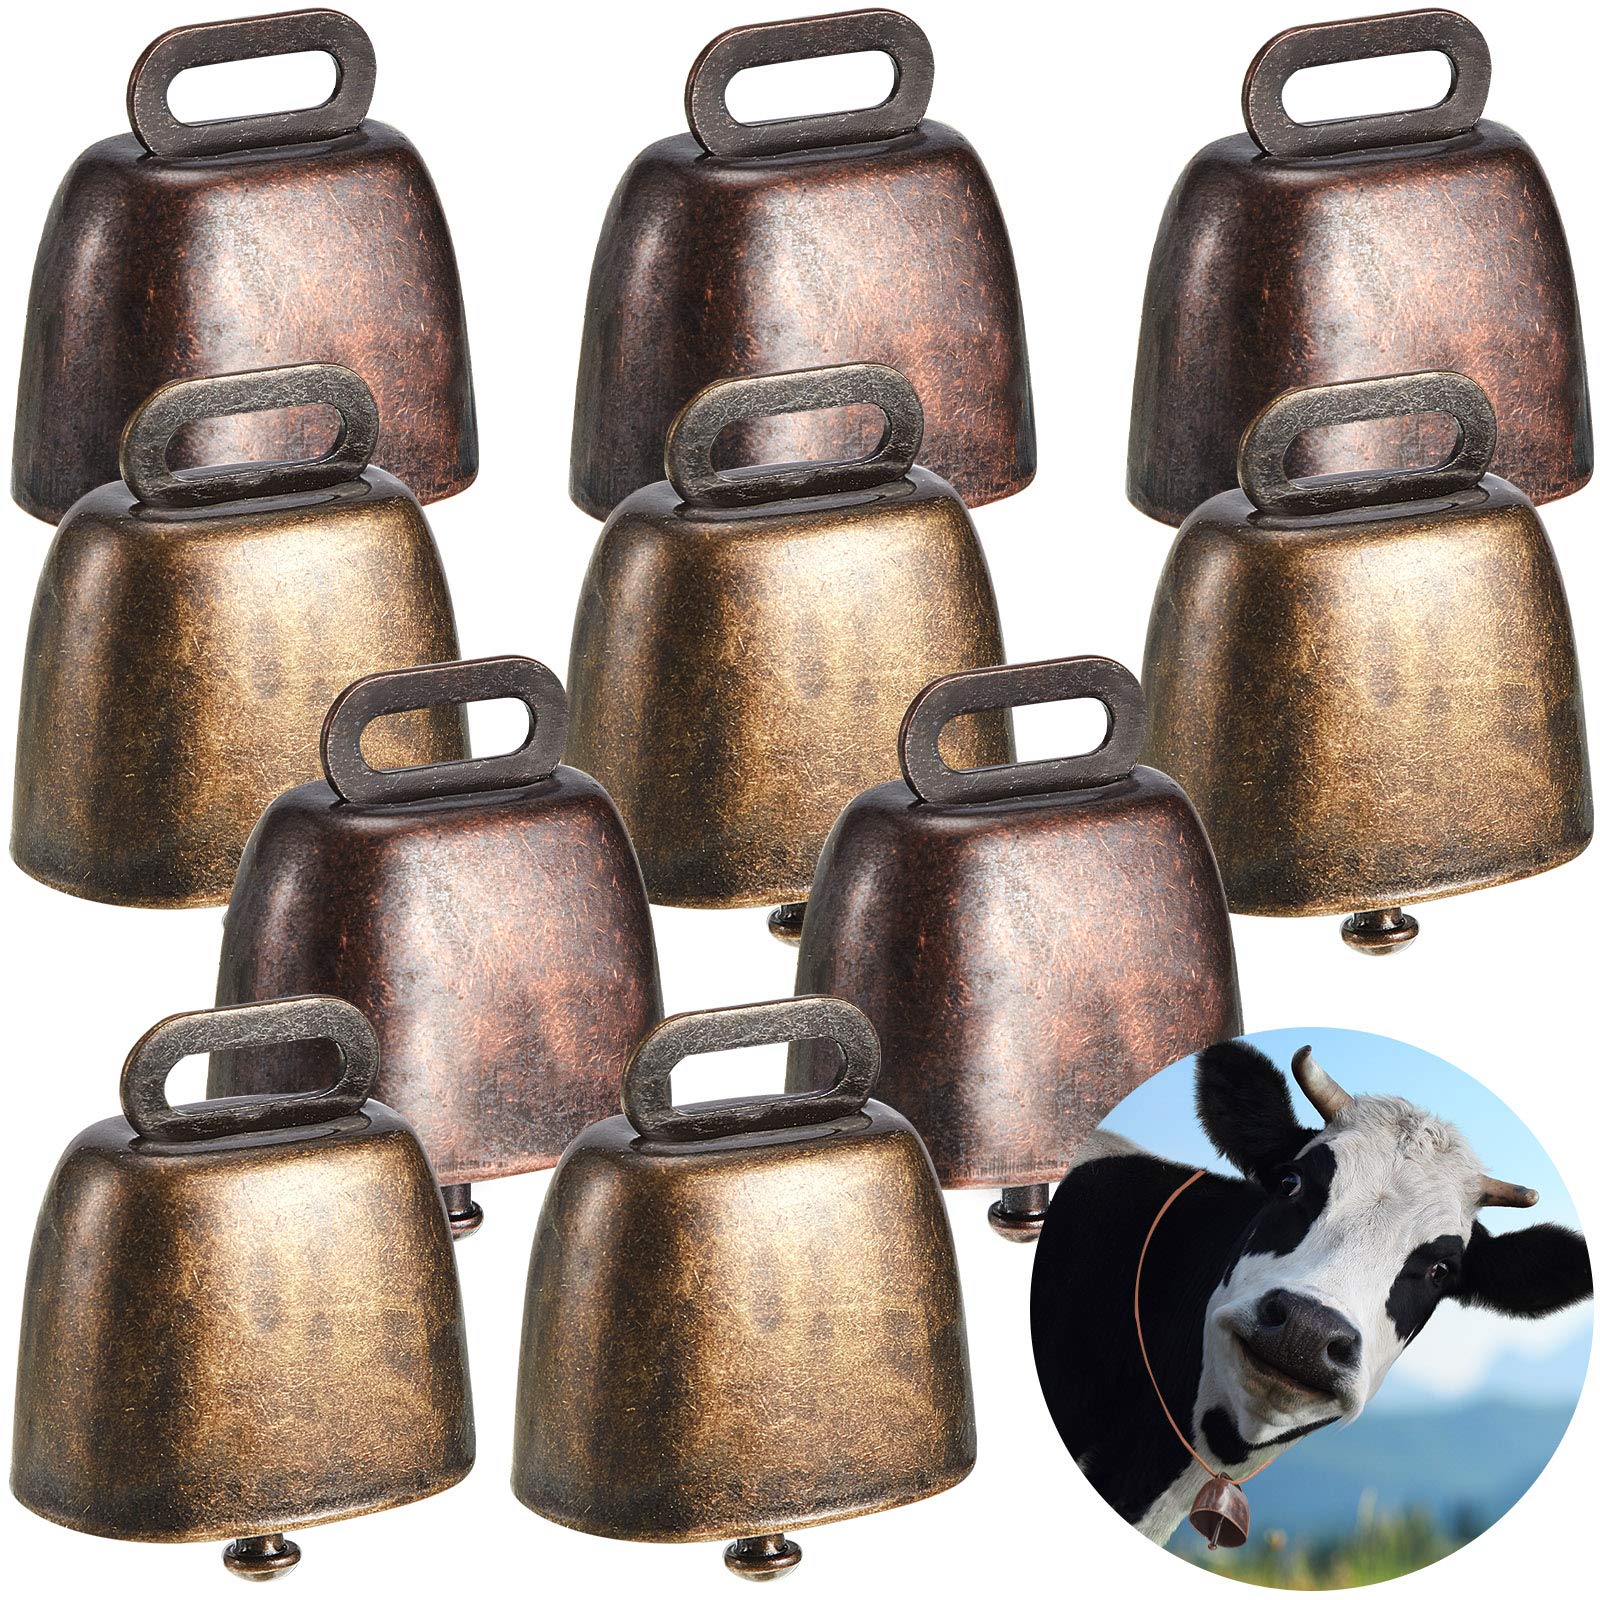 Ripeng Cow Horse Sheep Grazing Copper Bells Small Brass Bells